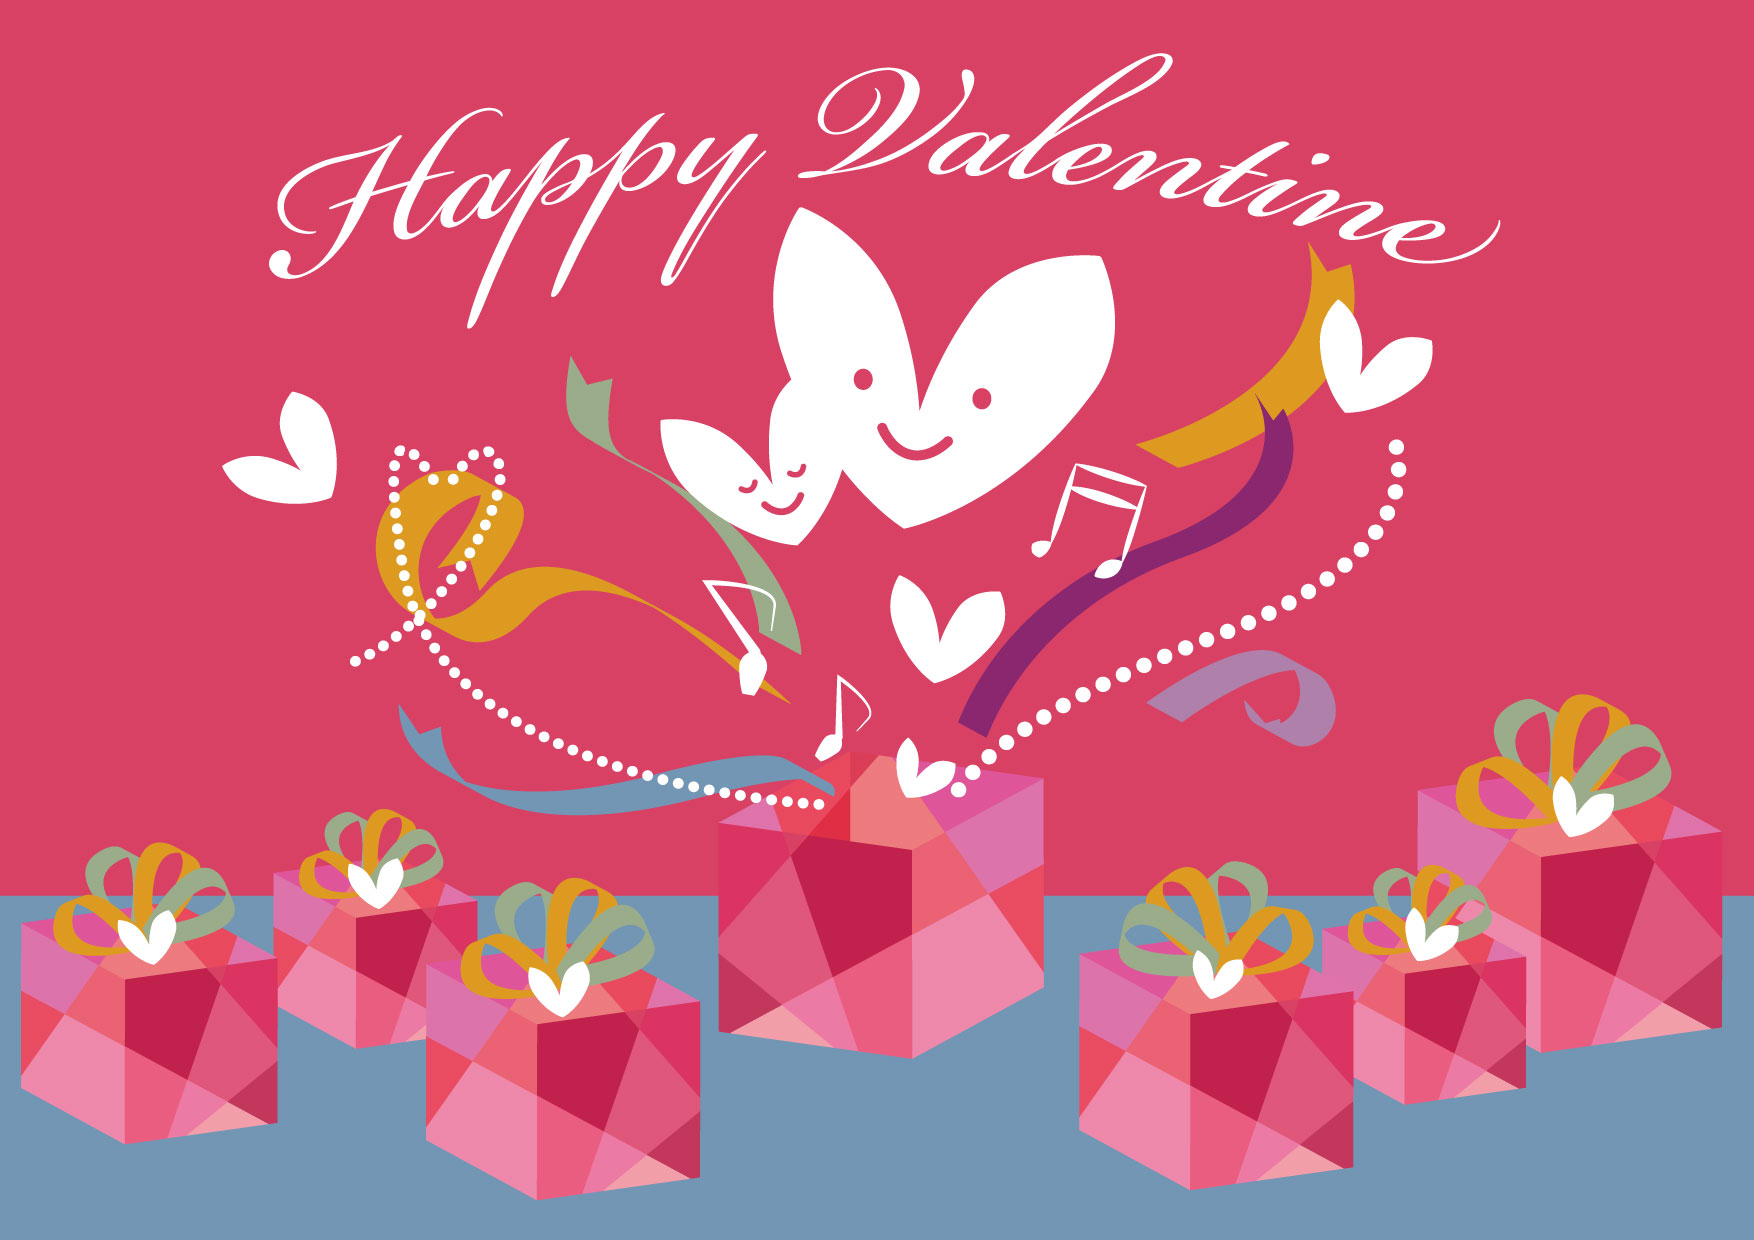 可愛いイラスト無料 バレンタイン ハート プレゼント リボン Free Illustration Valentine Heart Present Ribbon 公式 イラストダウンロード